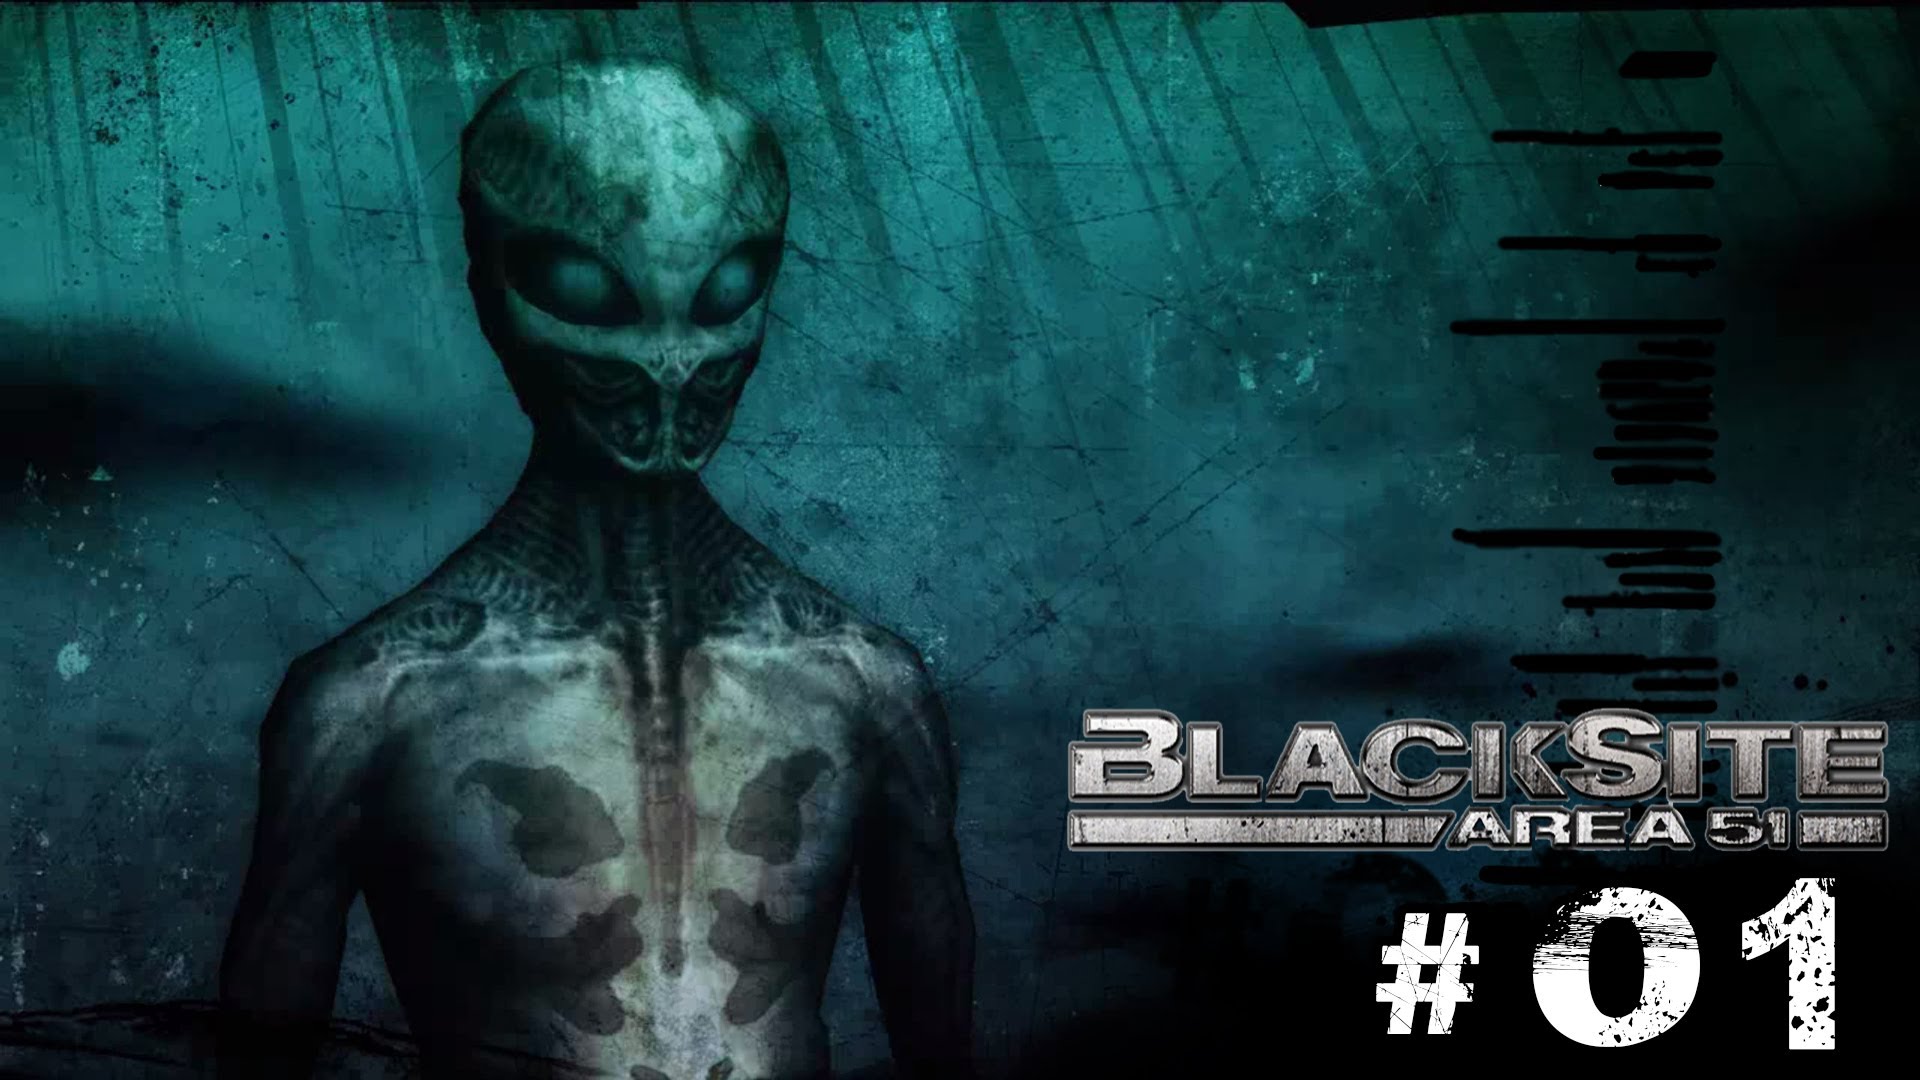 BlackSite: Area 51 #24